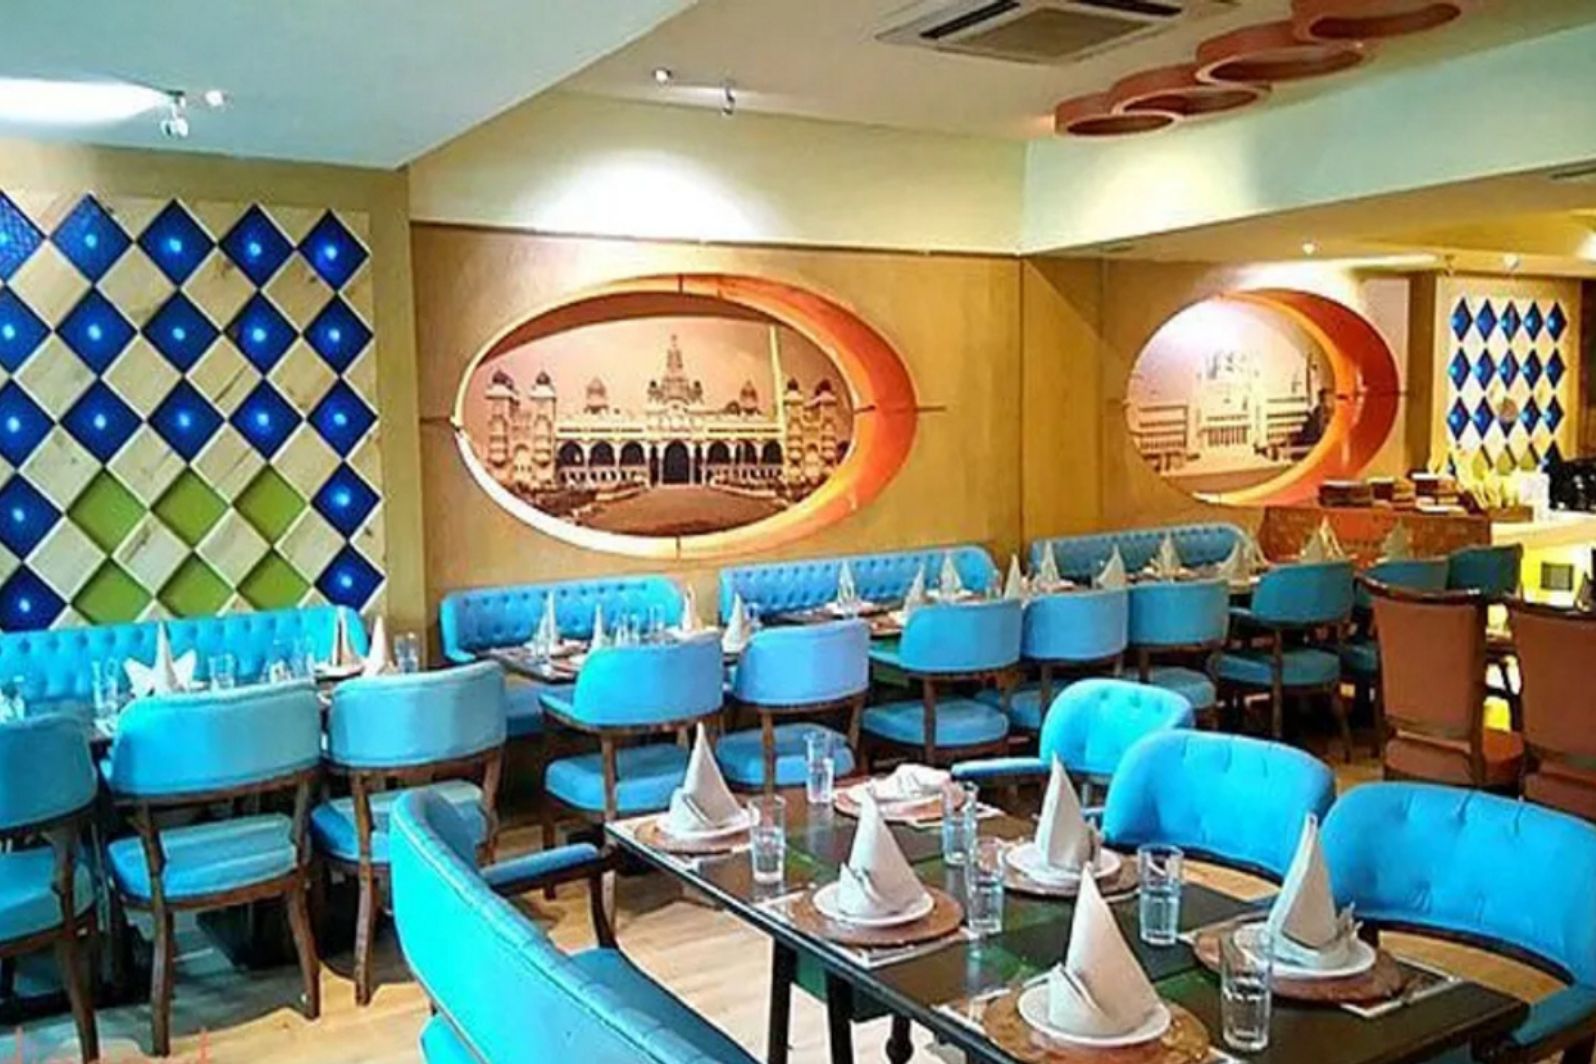 grills & platters by pind balluchi gk 1 restaurant new delhi